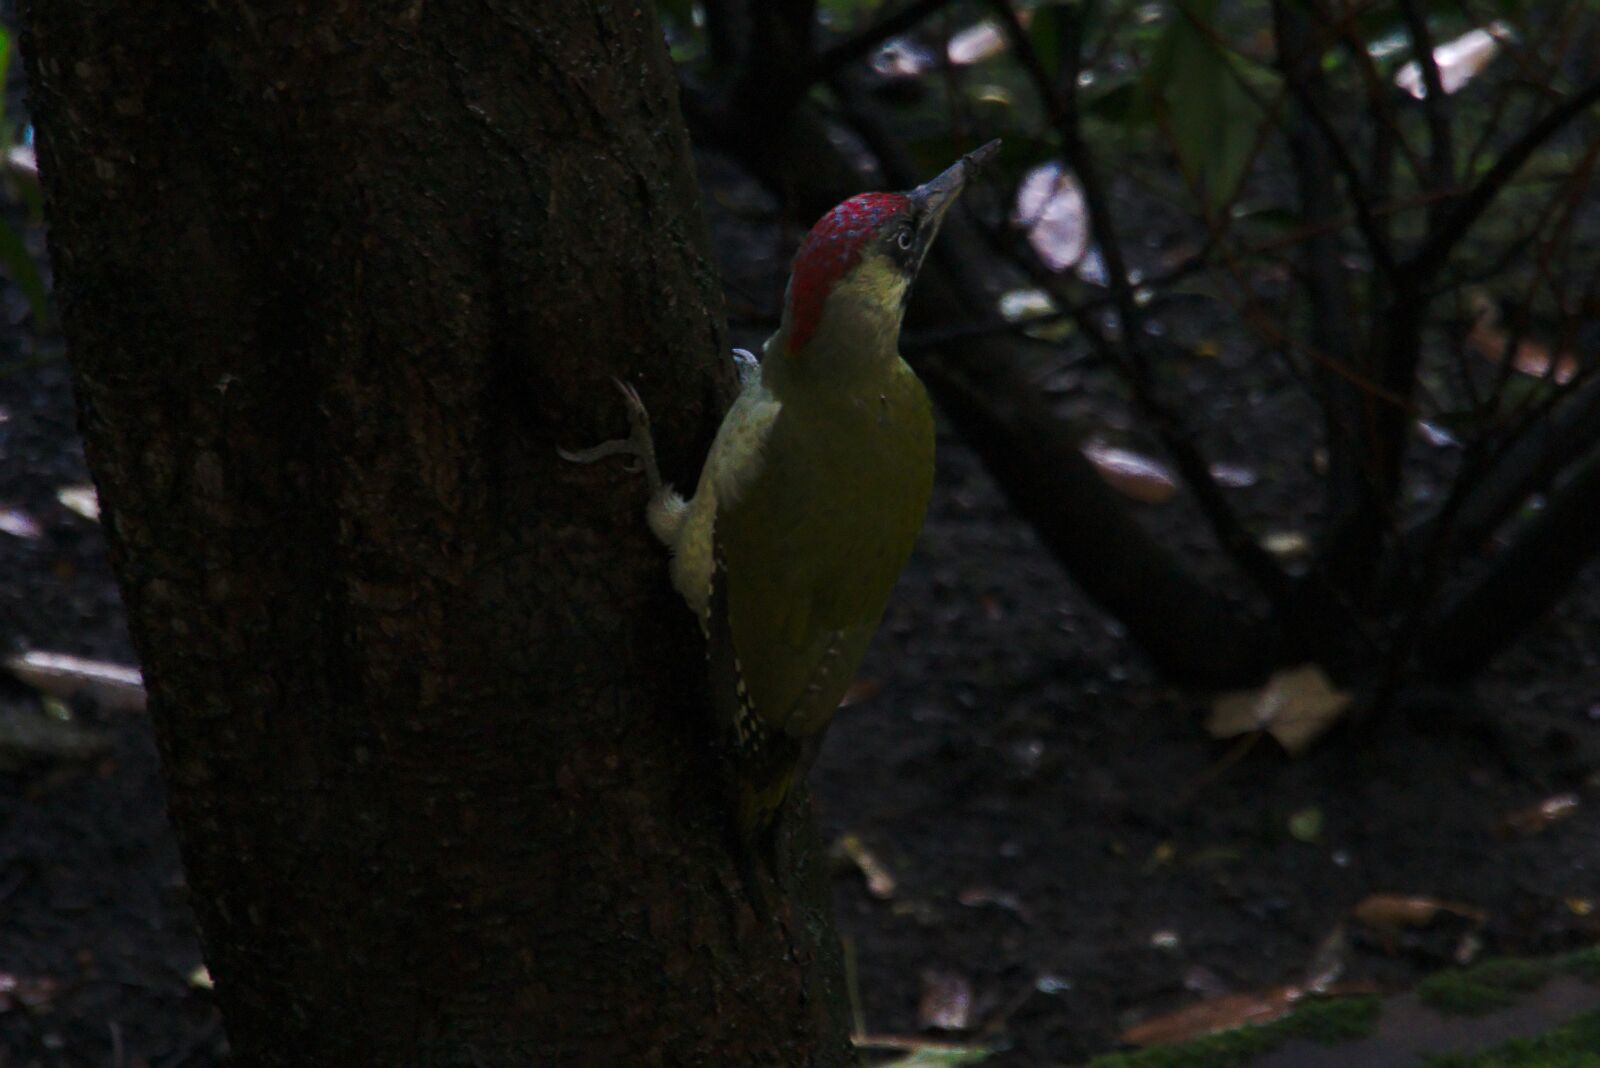 Sony a6000 sample photo. Green woodpecker, bird, tree photography